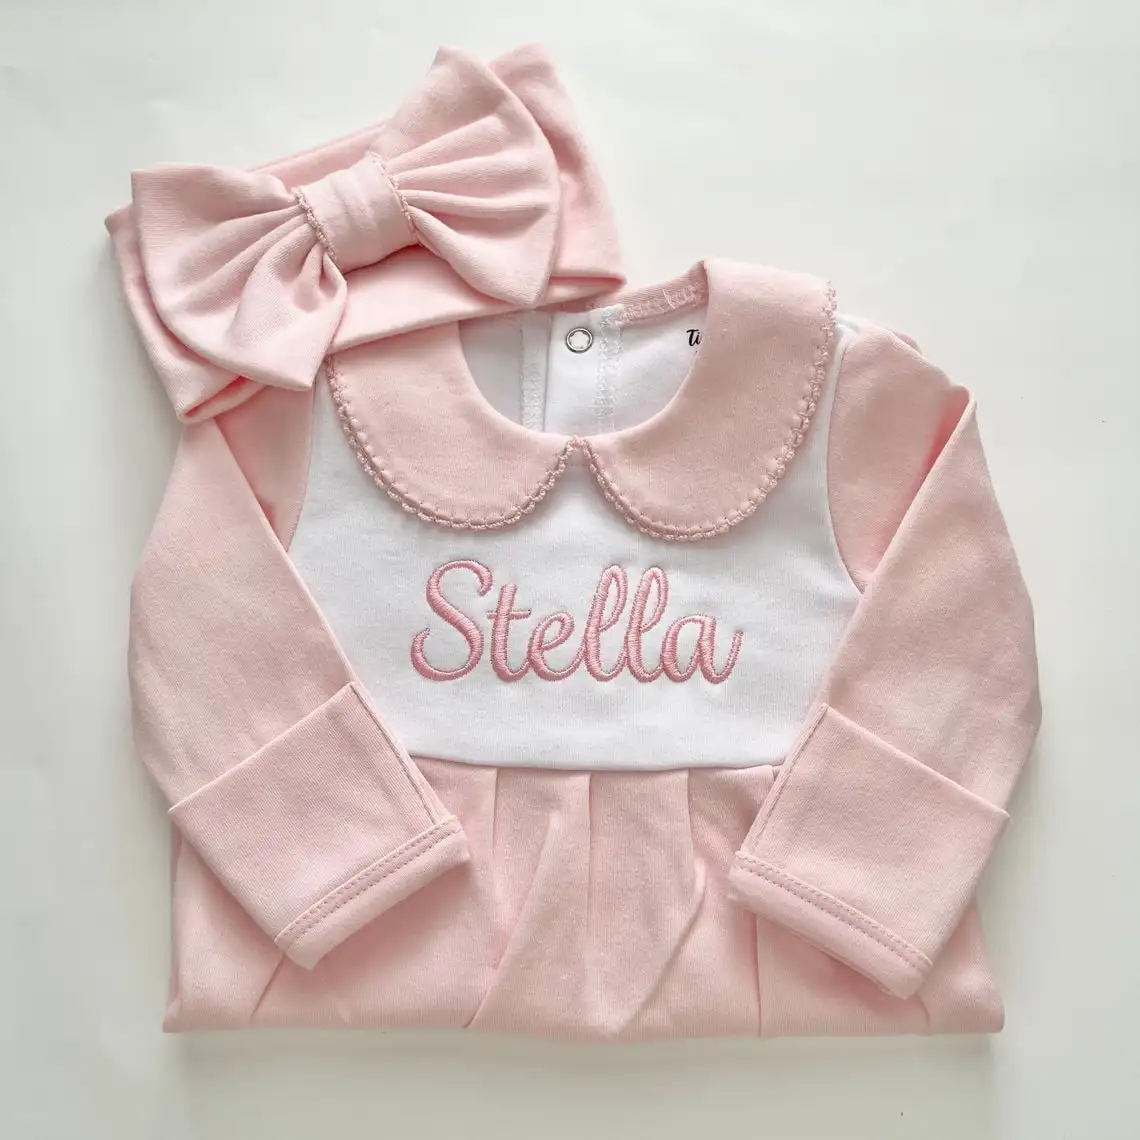 Personal isierte Baby Outfit Bio-Baumwolle Baby Stram pler Set Großhandel Home Baby Footie Pyjamas